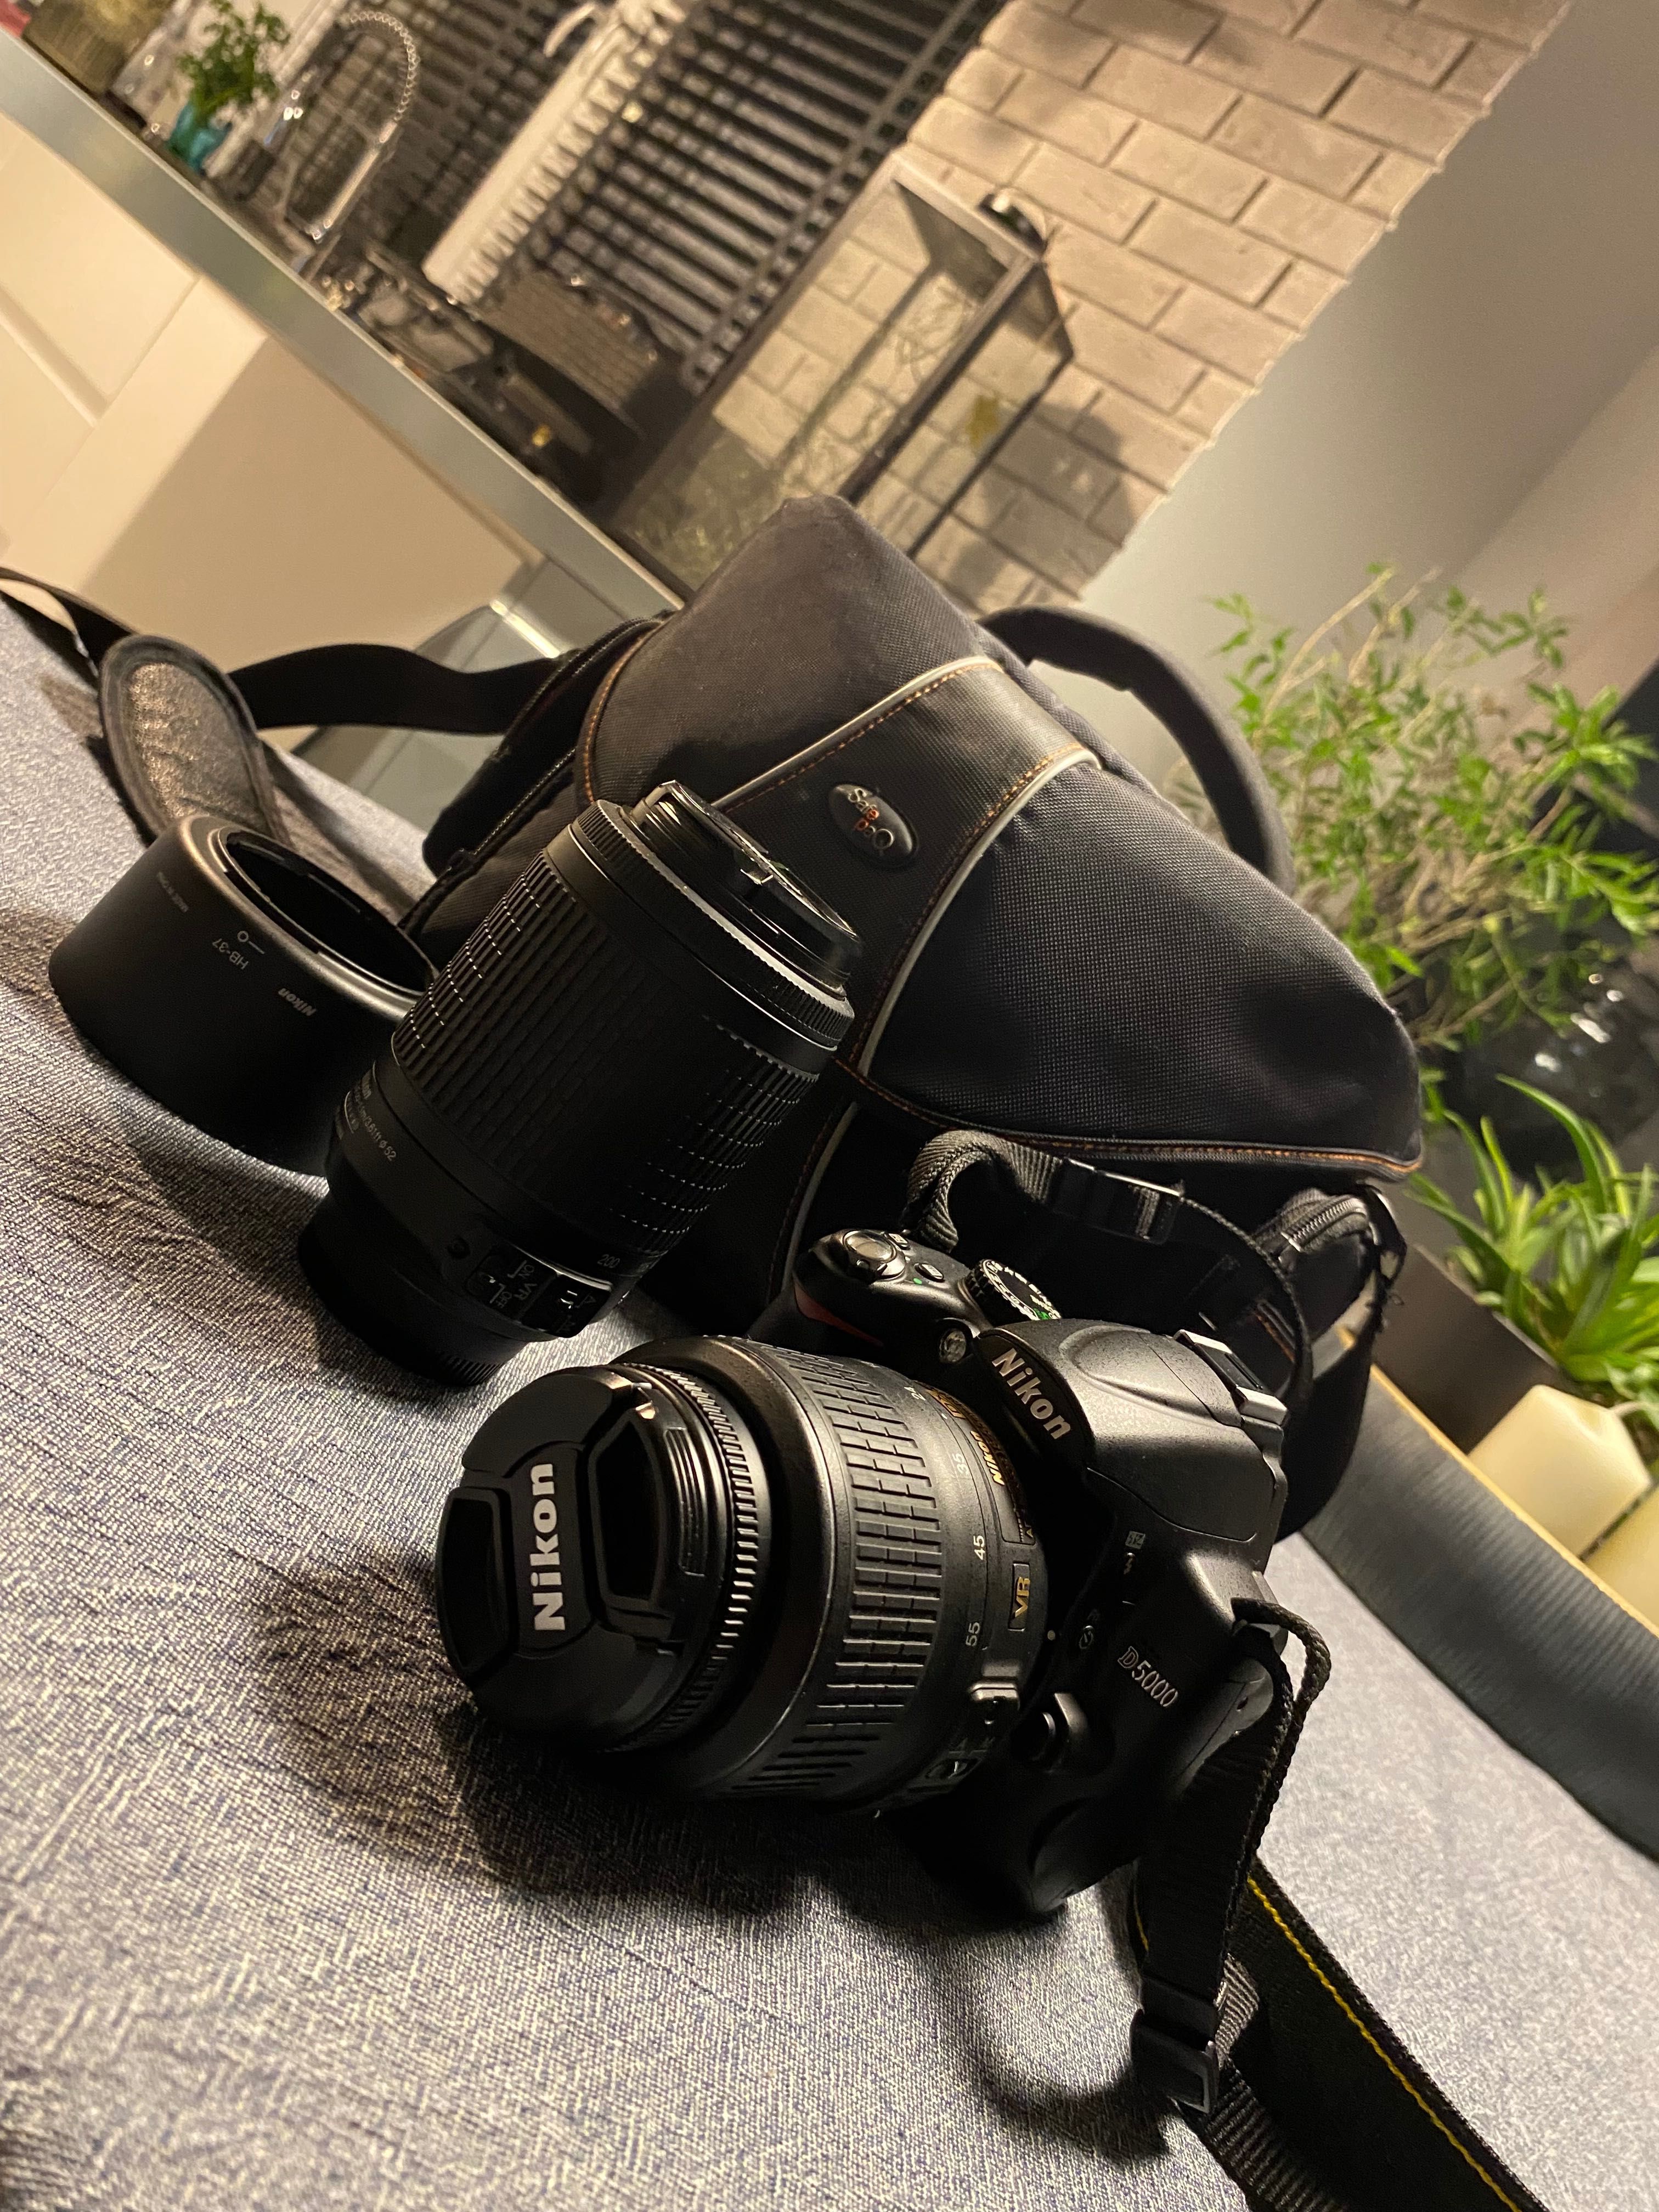 Lustrzanka Nikon D5000 dwa obiektywy